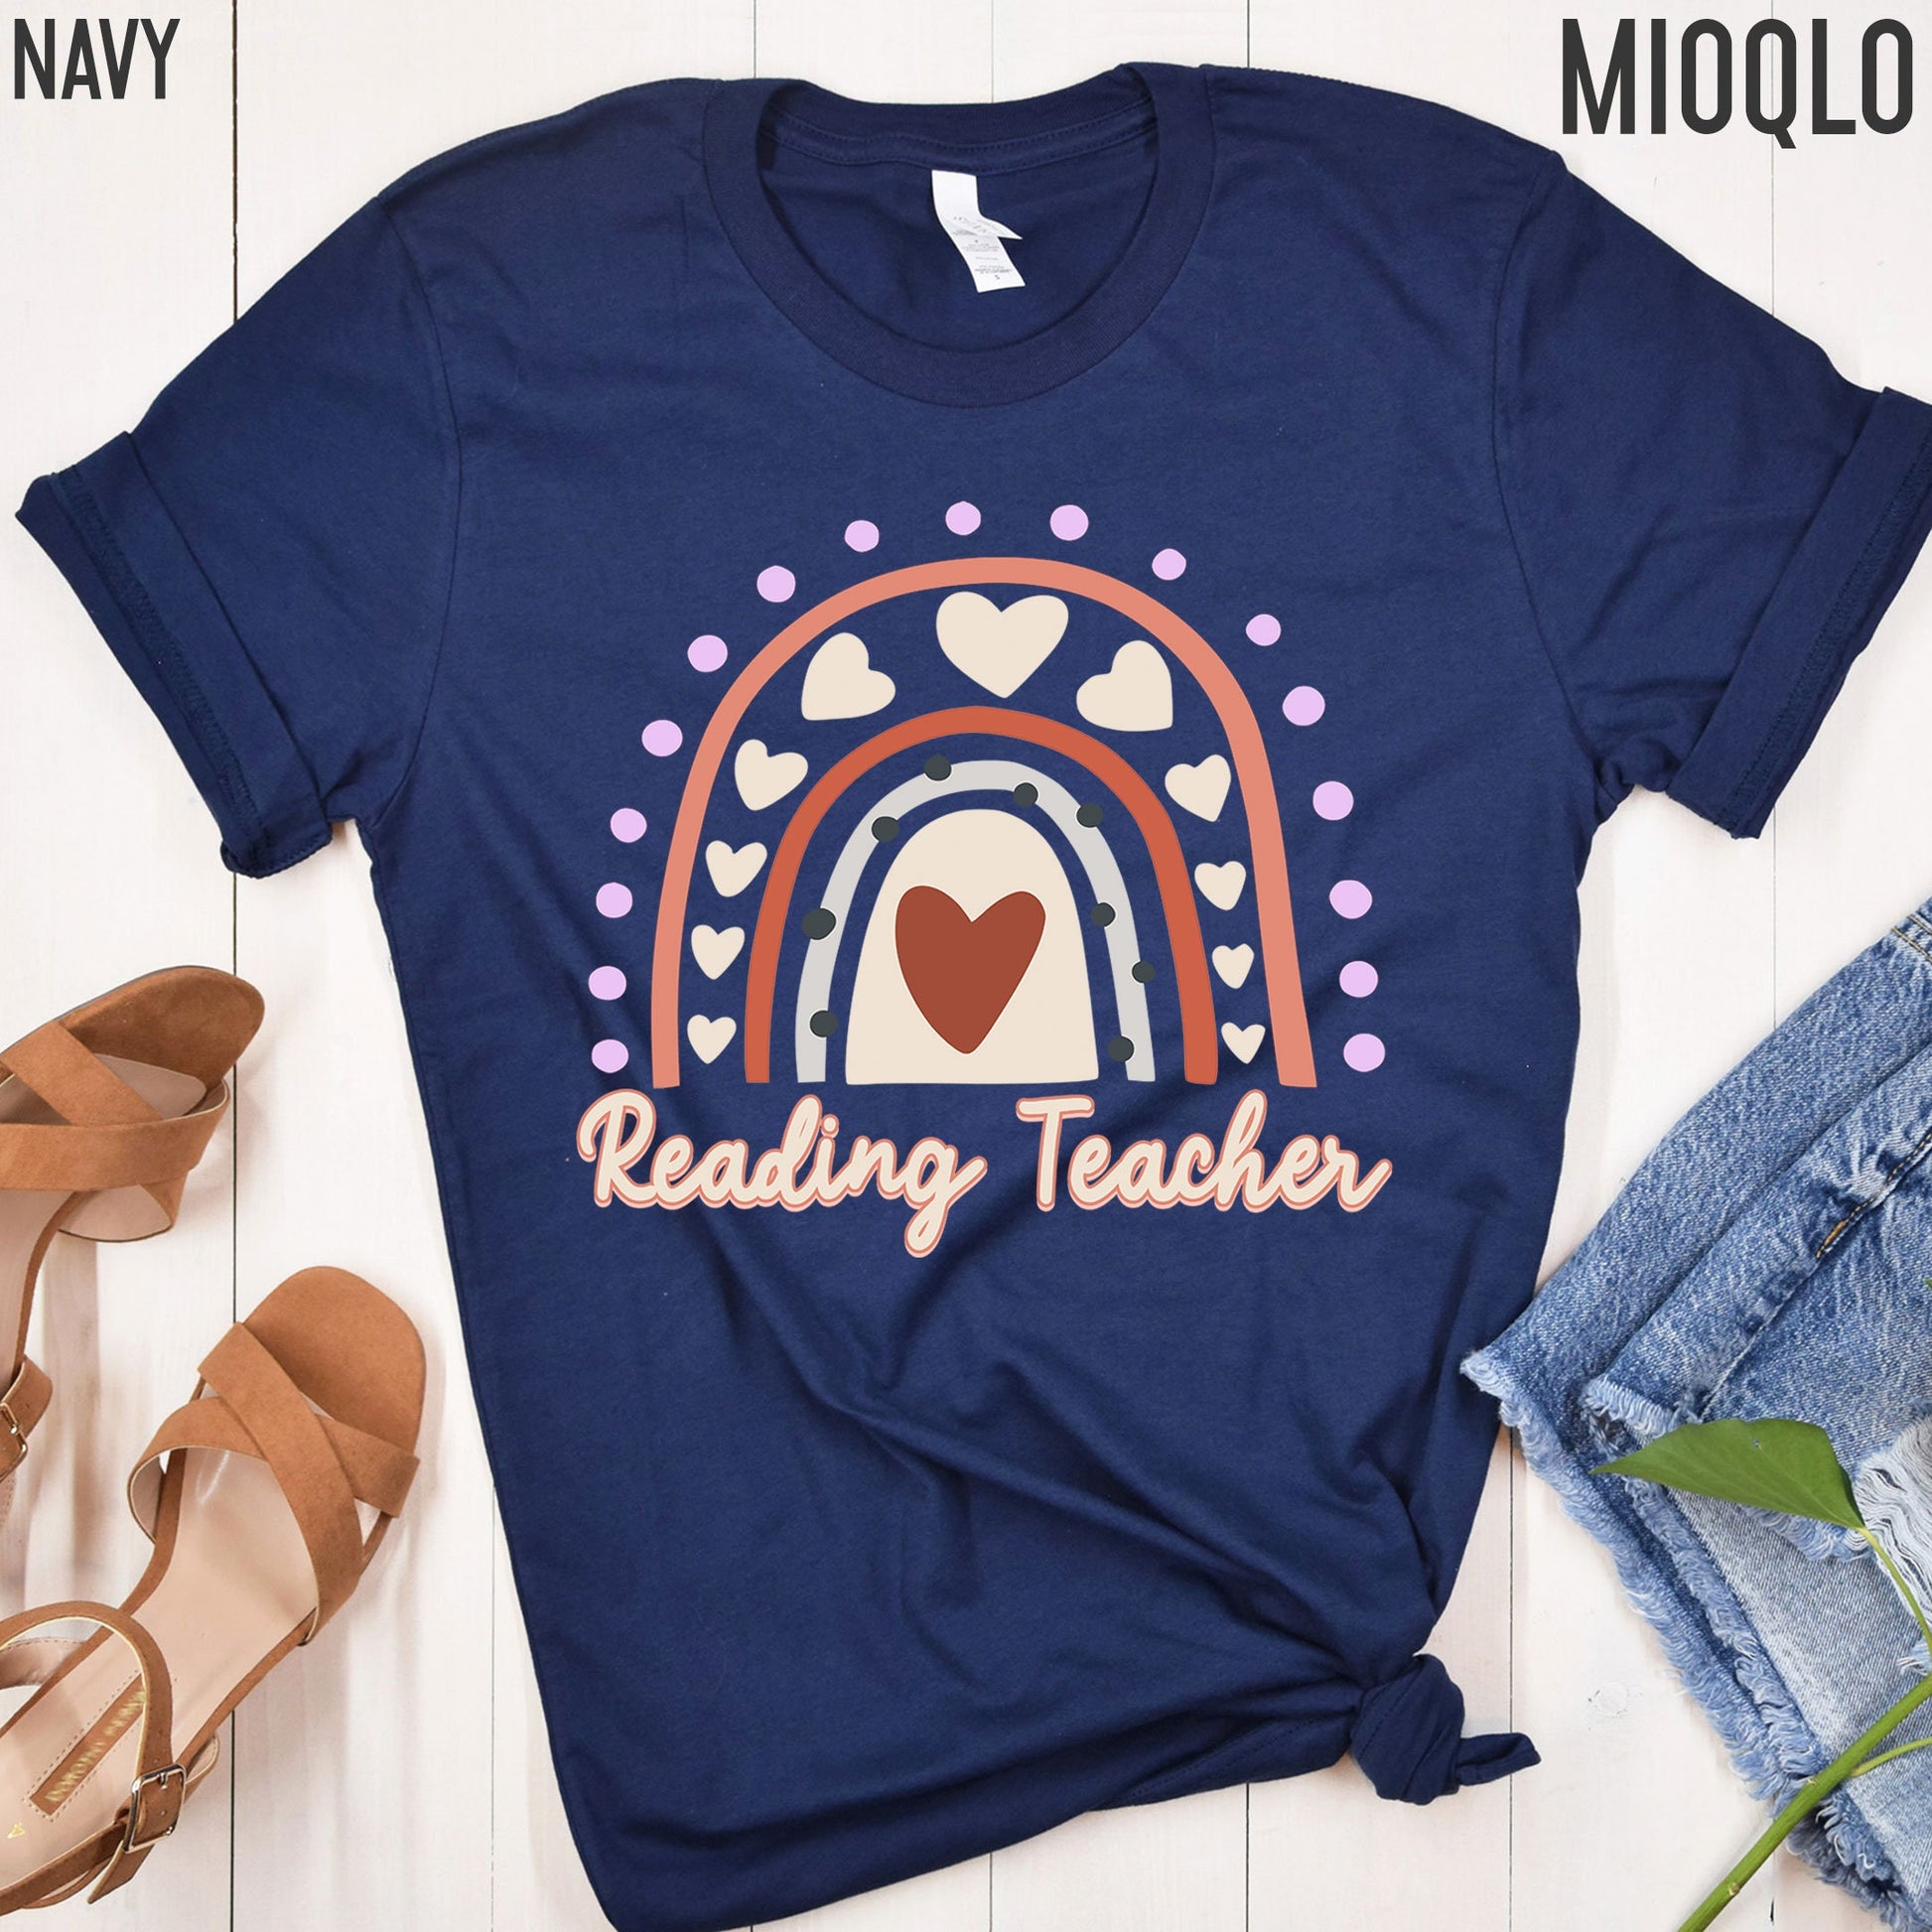 Reading Teacher Shirt, Literacy Coach Shirt, Dyslexia Teacher, Reading Interventionist Shirt, Reading Coach Shirt, Reading Specialist Shirt